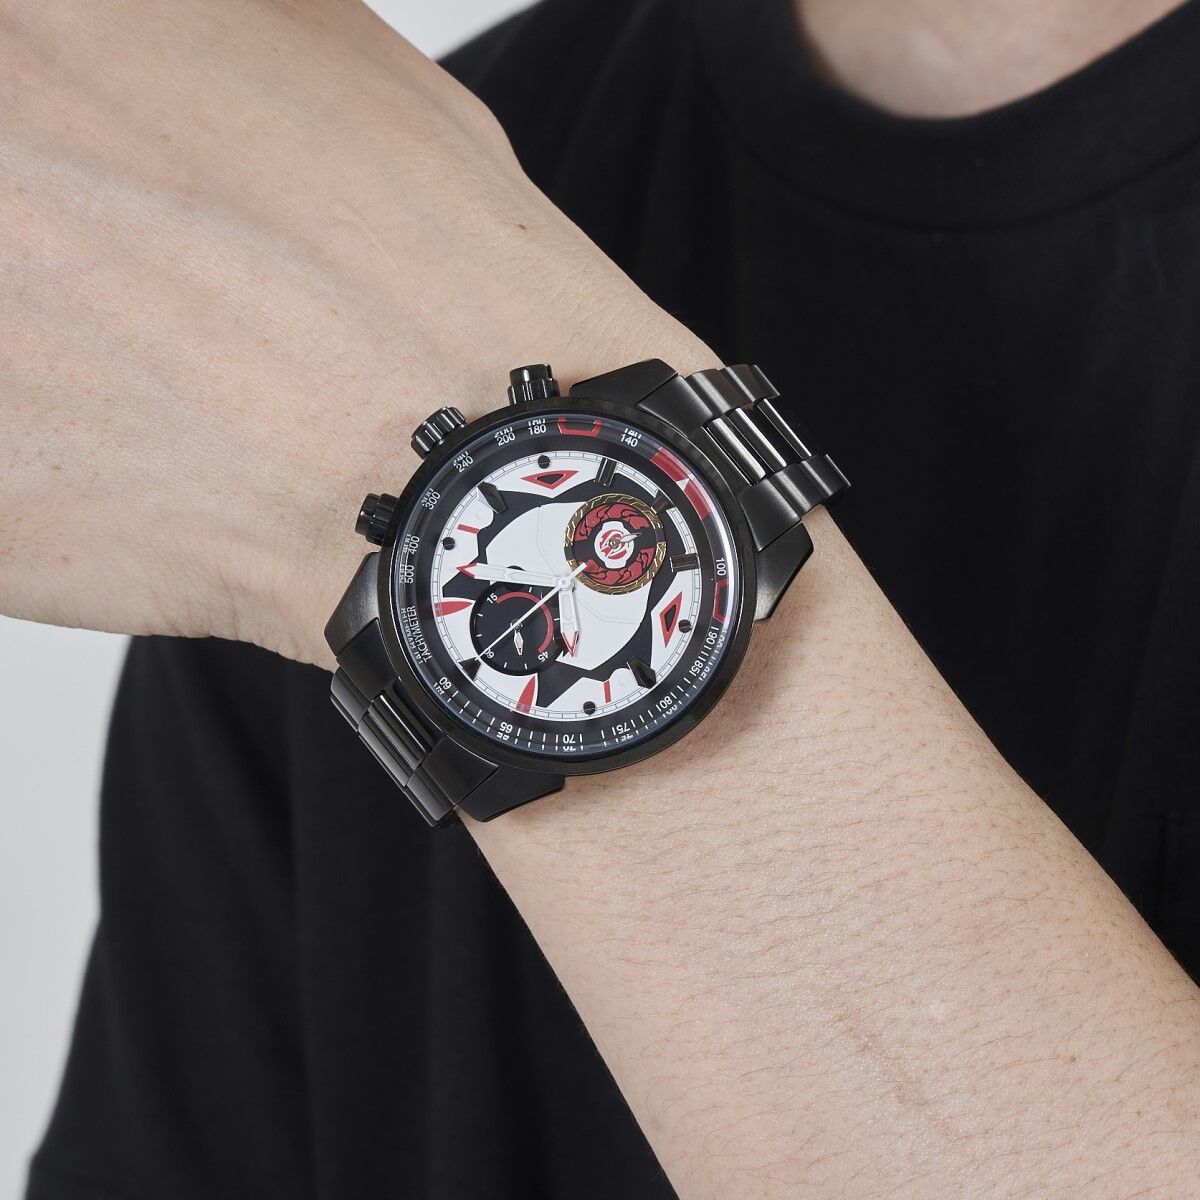 仮面ライダーギーツ クロノグラフ腕時計 全3種 | 仮面ライダーシリーズ 